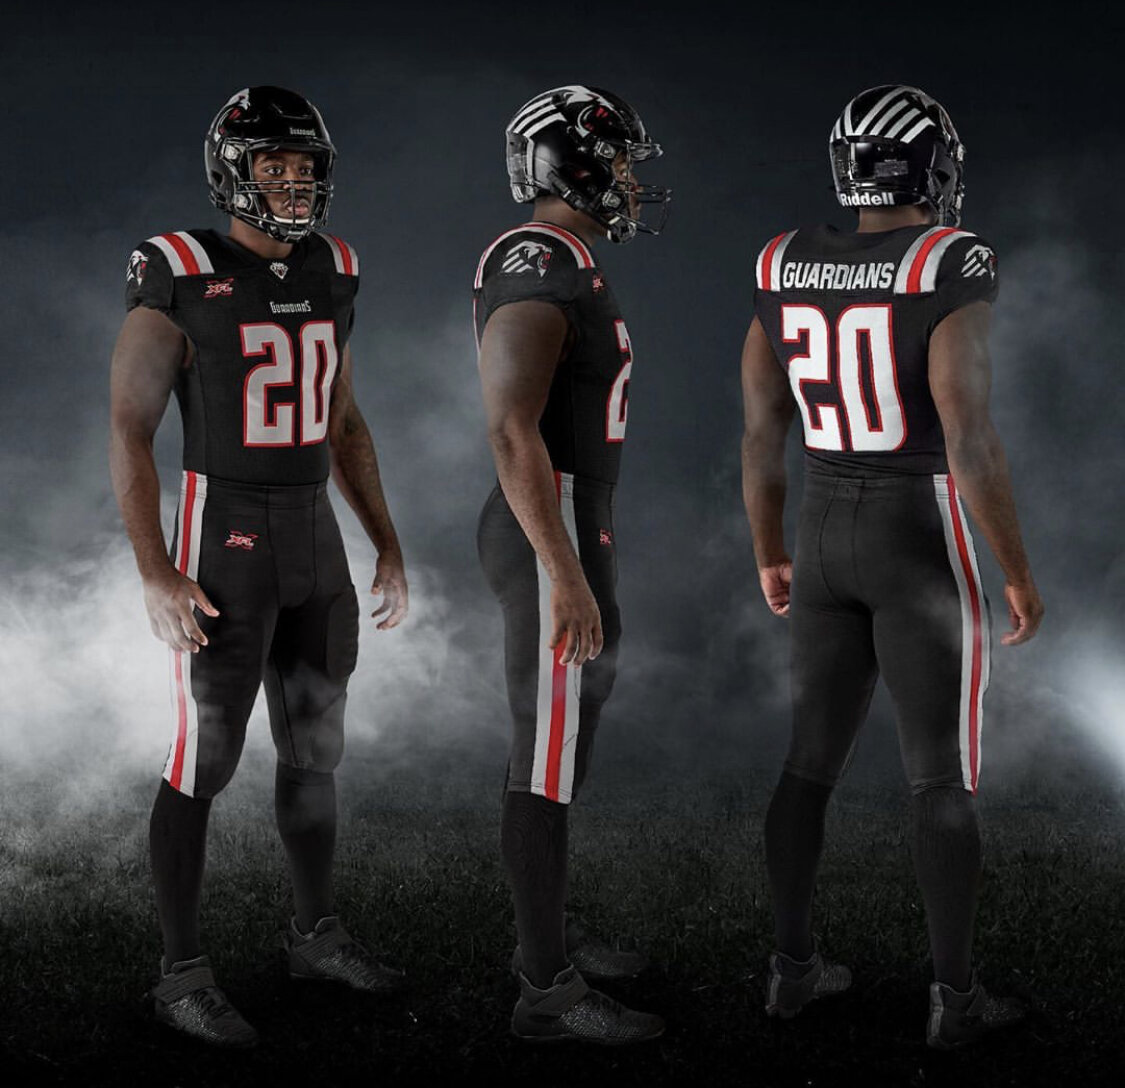 St. Louis BattleHawks unveil team uniforms (Photos) - St. Louis